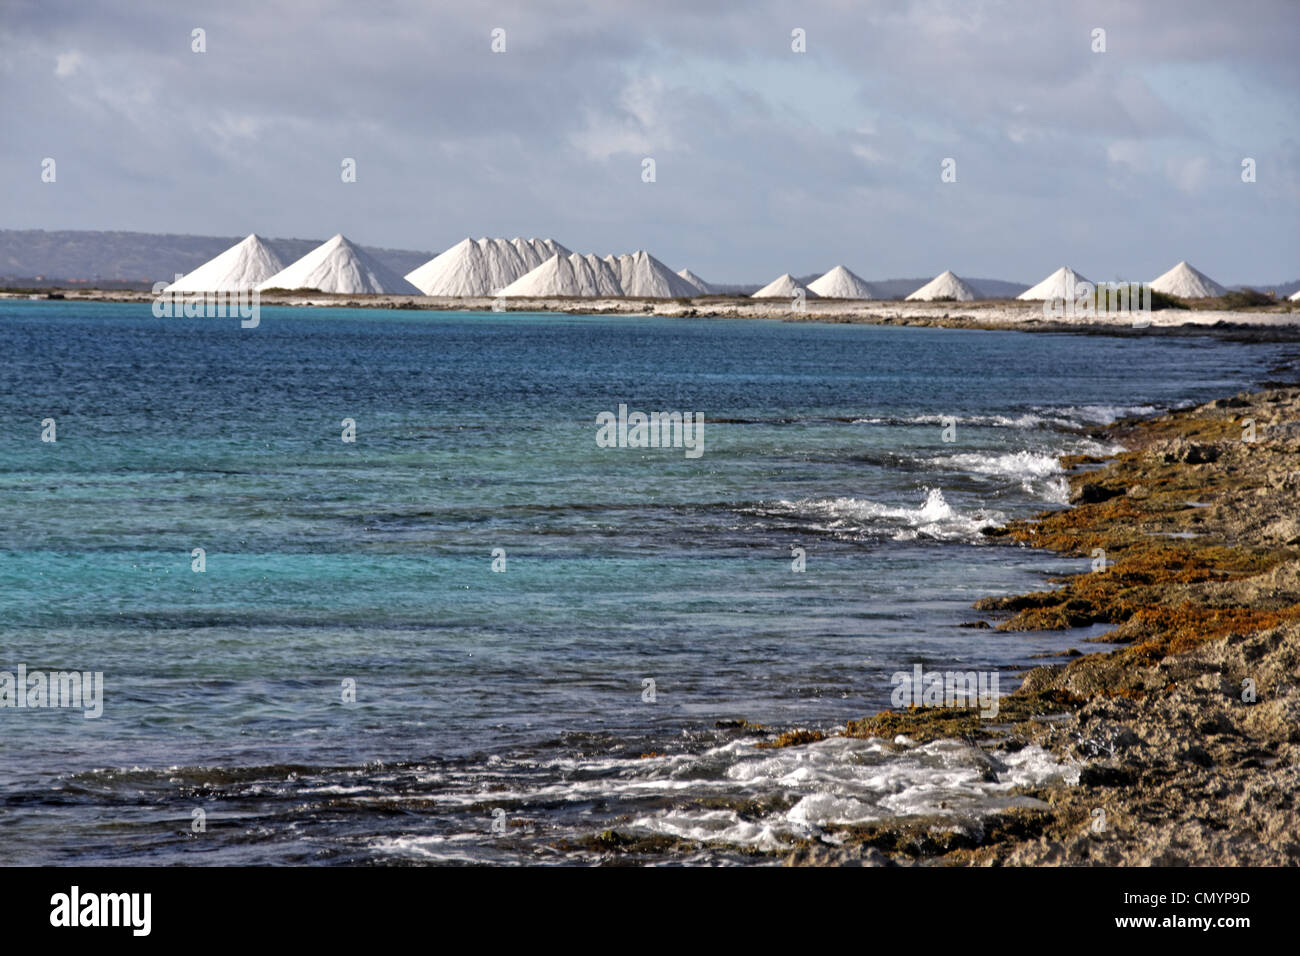 West Indies, Bonaire, Salt pans, Sea salt mine of Pekelmeer Stock Photo